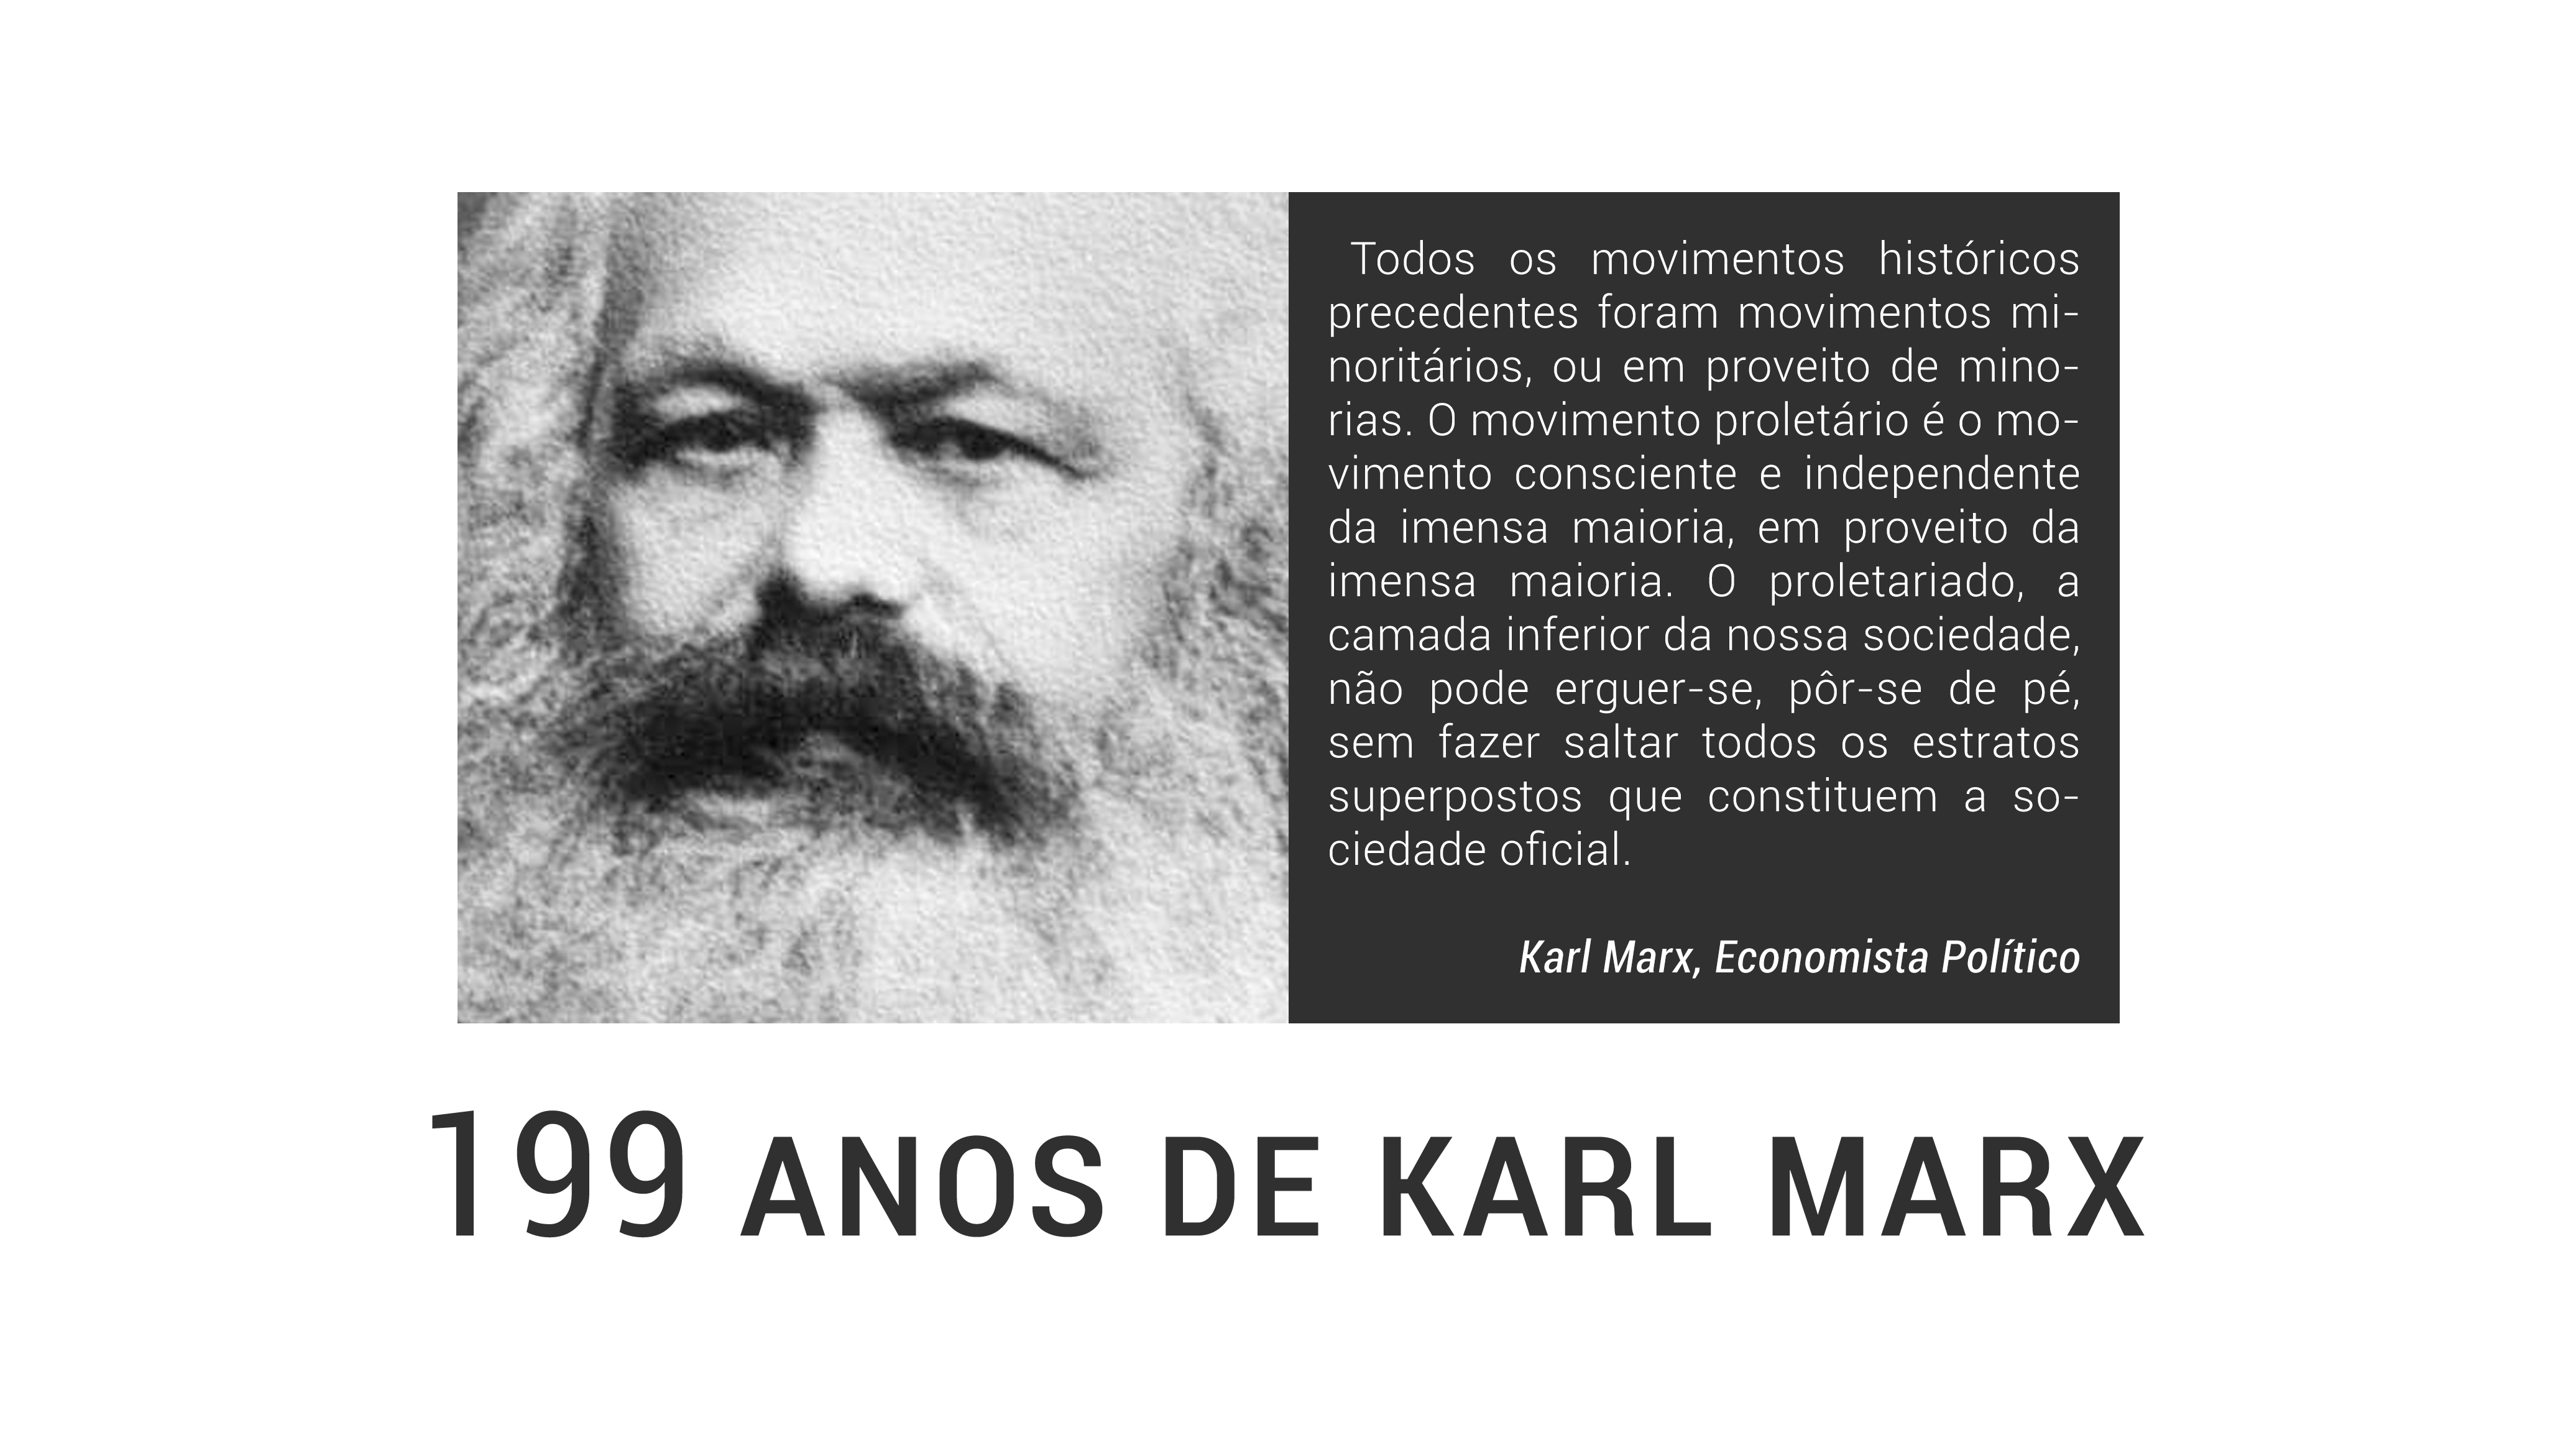 5 de maio, aniversário de Karl Marx